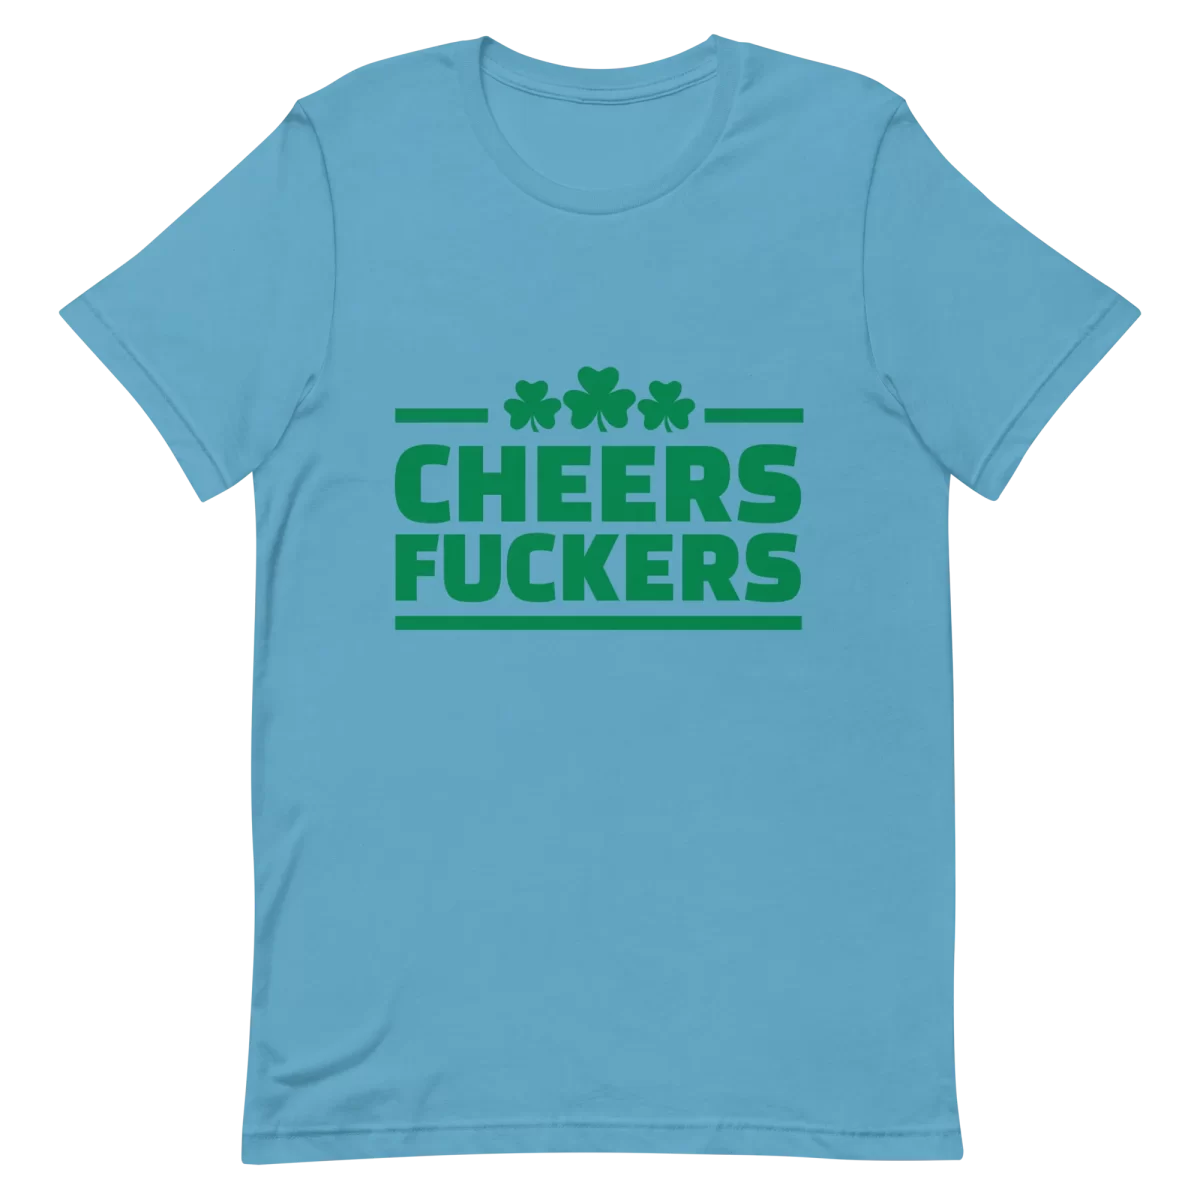 Unisex T-Shirt - Cheers Fuckers - Ocean Blue